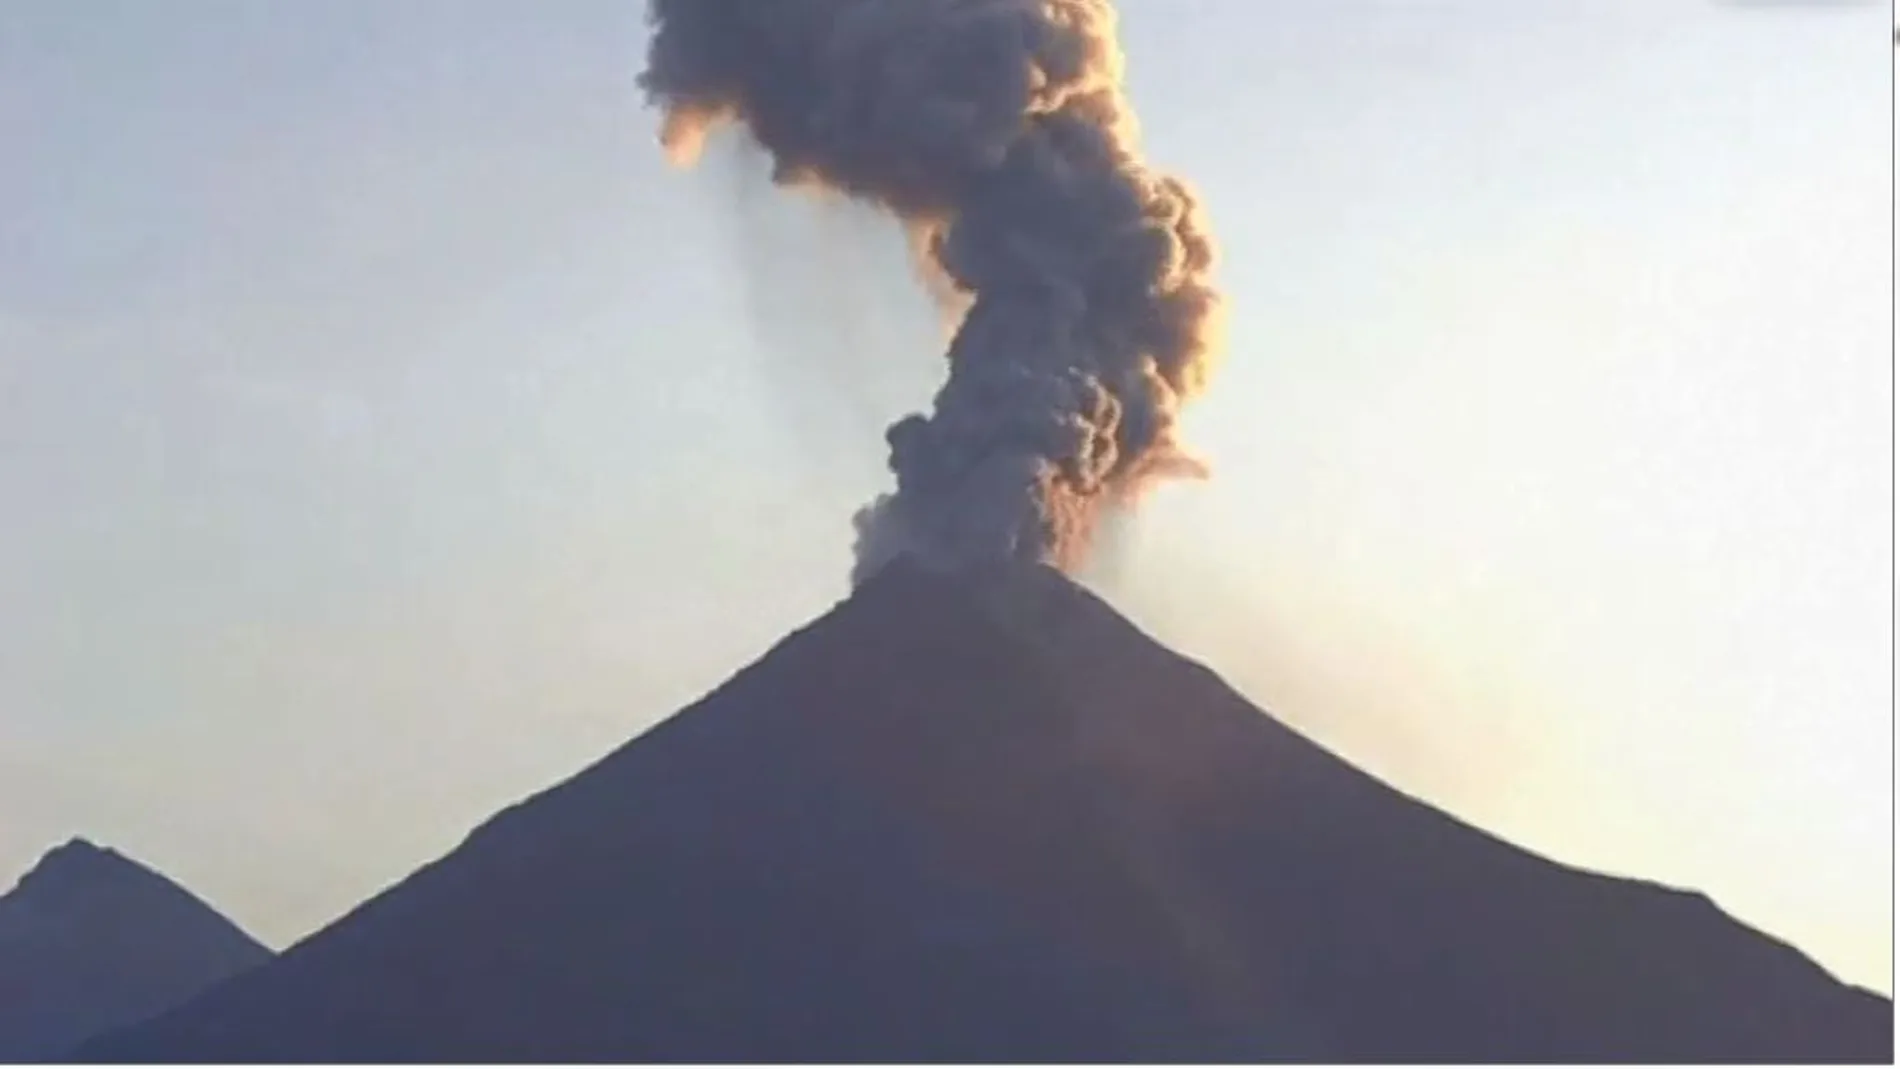 Impresionante la imagen de la erupción del volcán de Colima que se producía en la mañana de este sábado, en México.